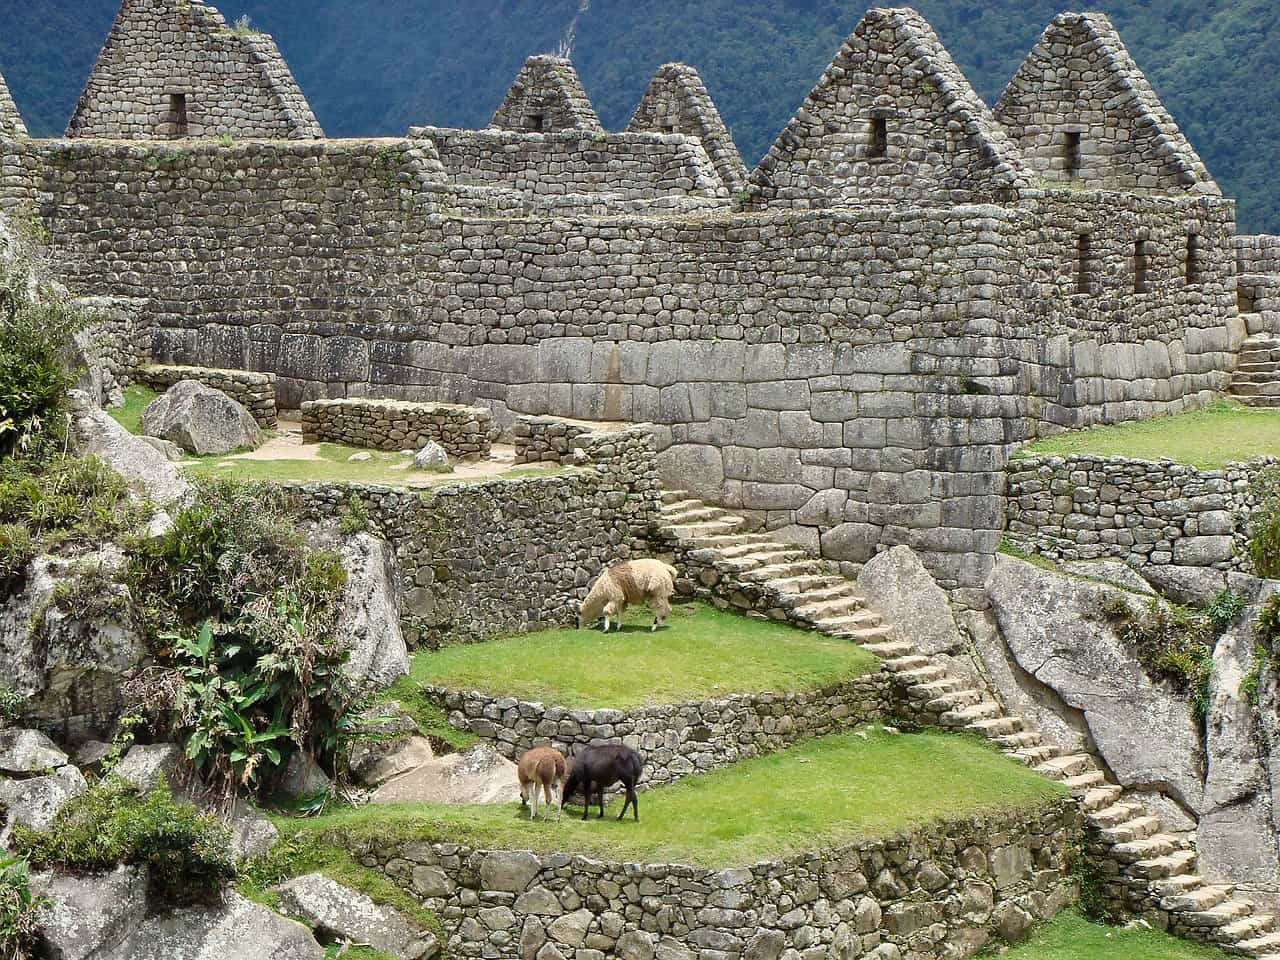 Alpaca Machu Picchu